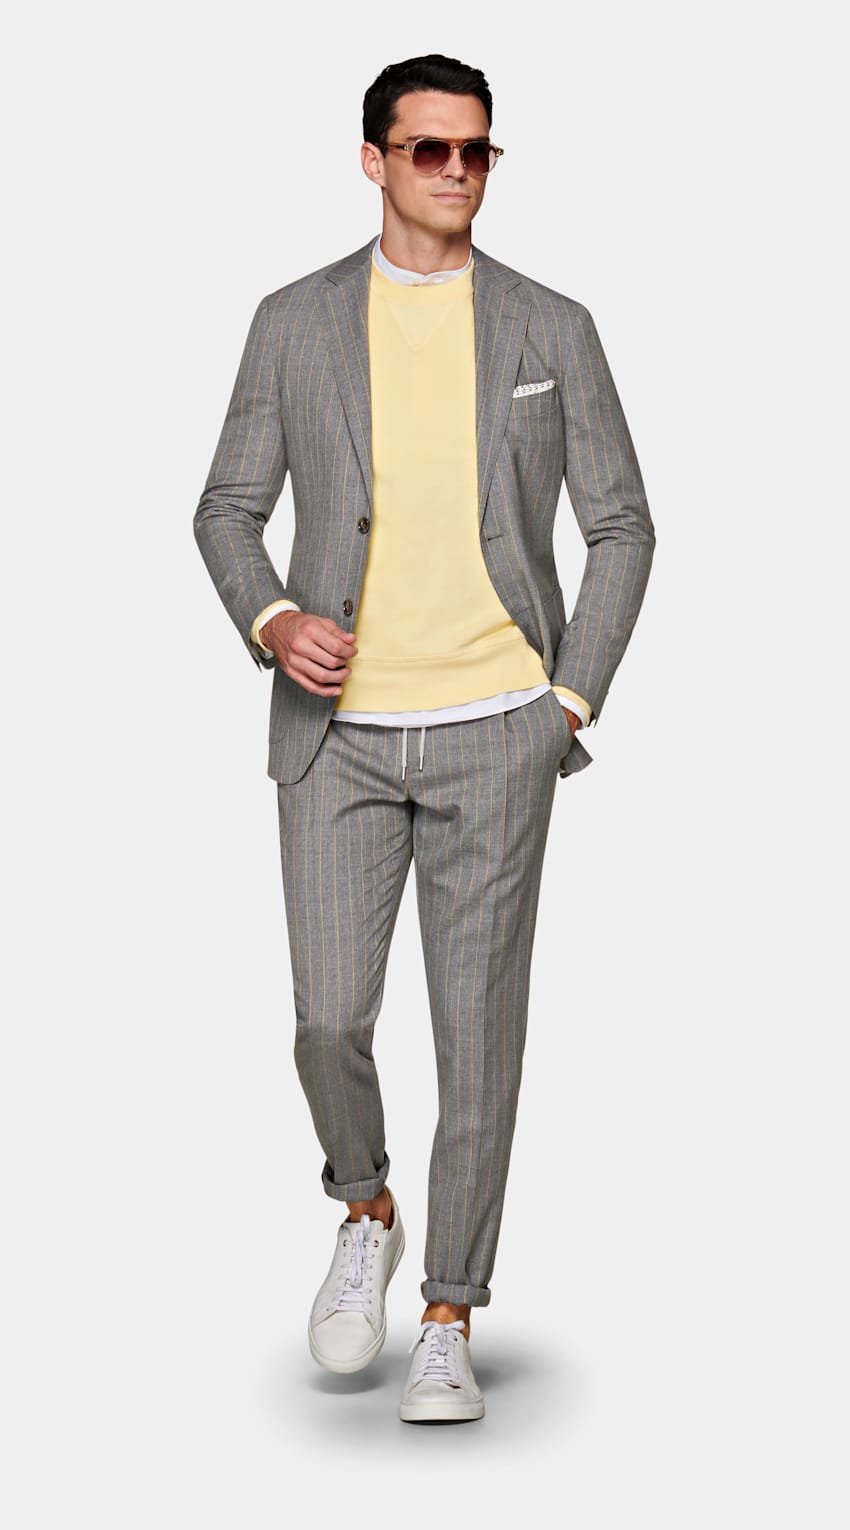 SUITSUPPLY 意大利 Vitale Barberis Canonico 生产的面料 Mid Grey Stripe Havana Suit 